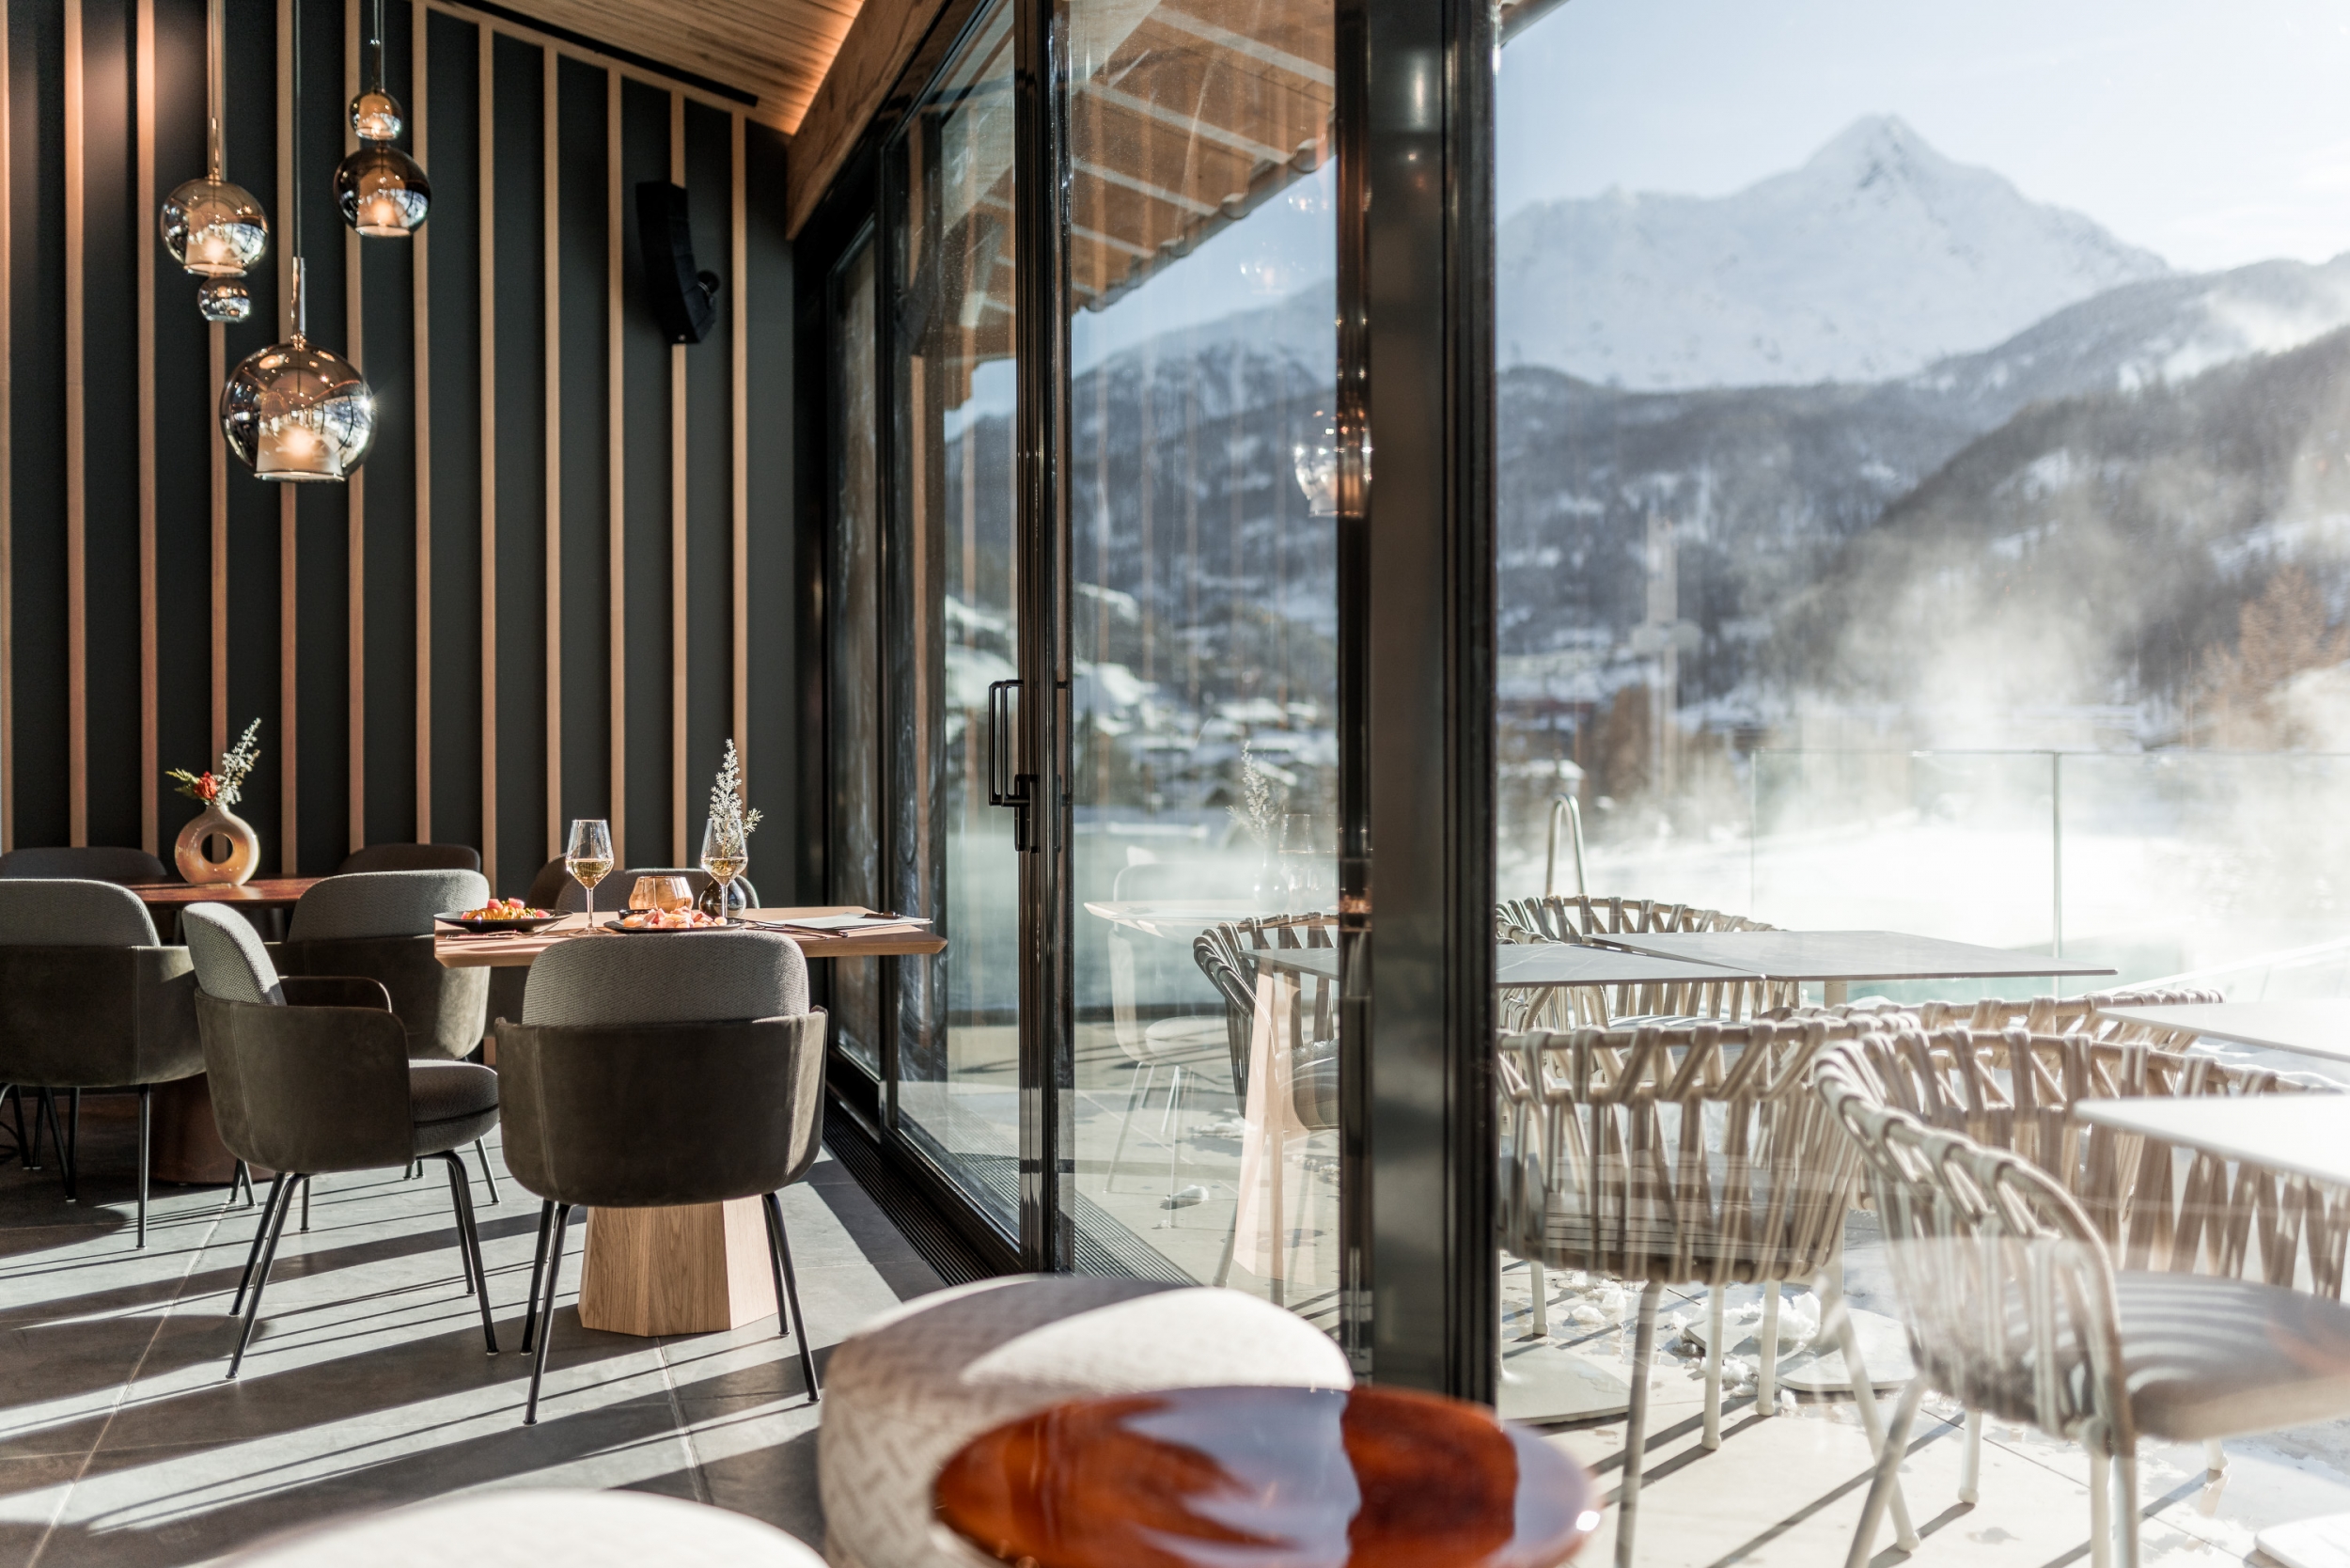 Summit Bistro & Bar mit Aussicht im Winter, Hotel Das Central in Sölden